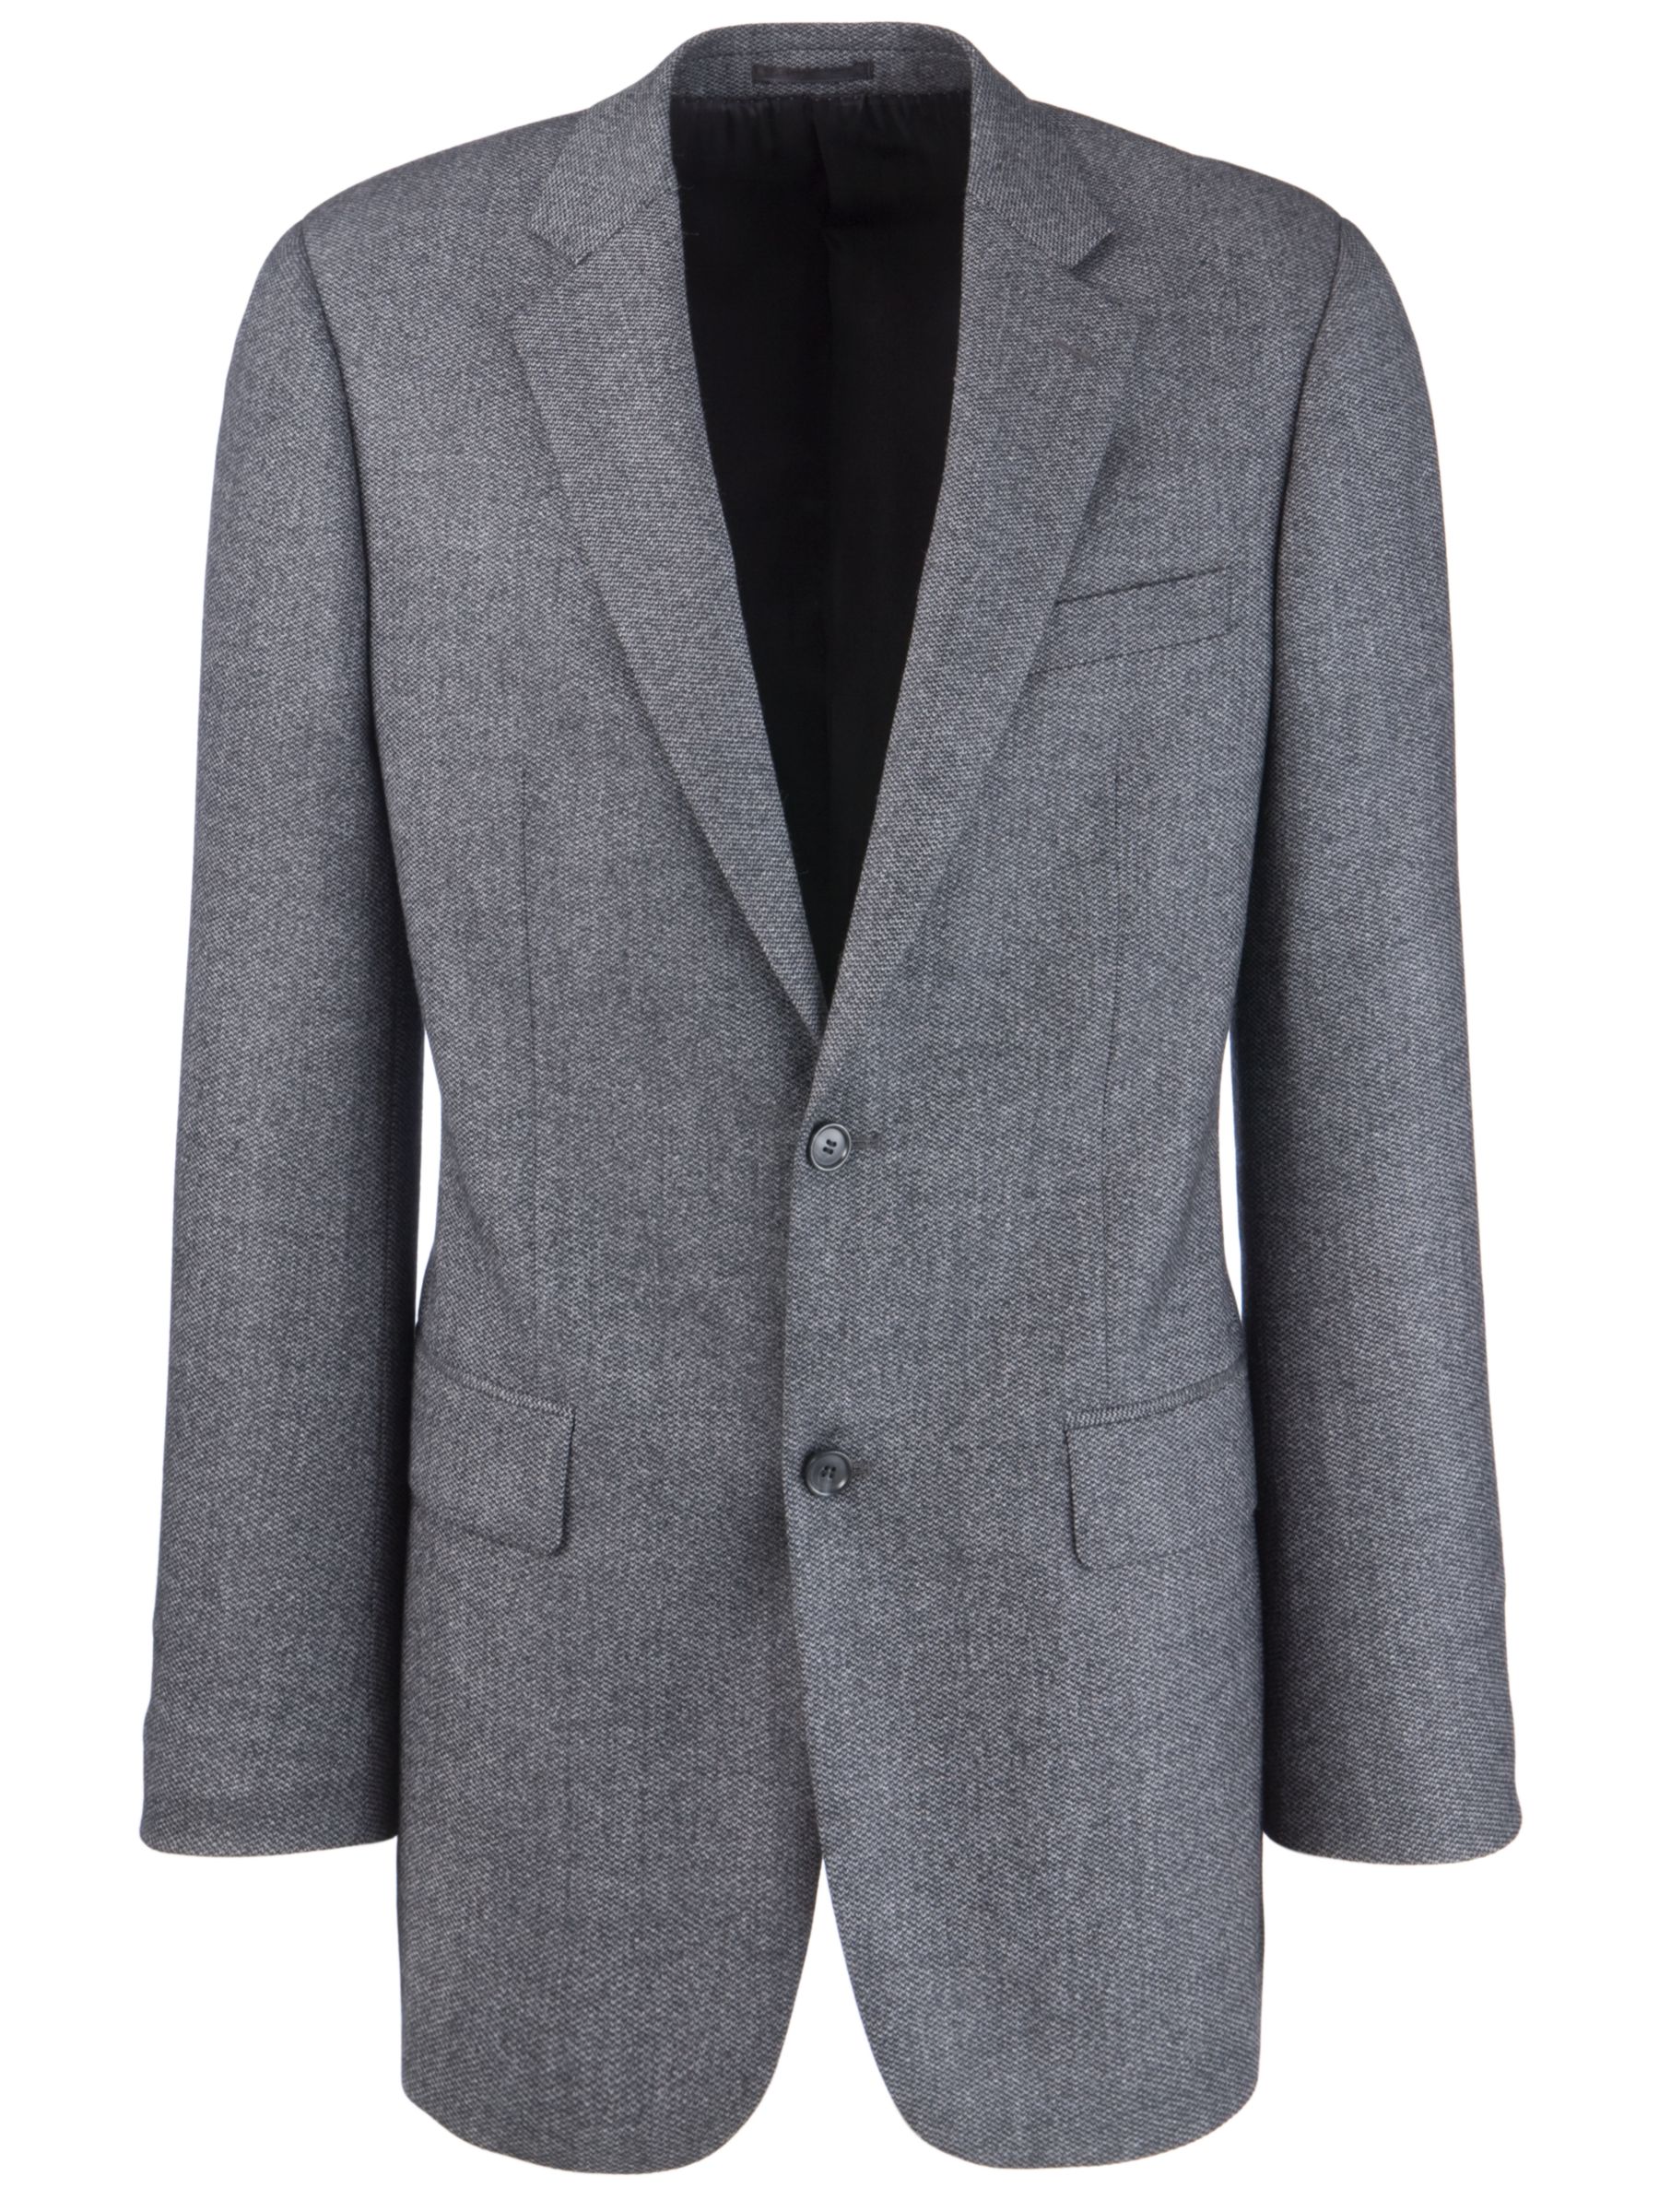 John Lewis Wool & Cashmere Suit Jacket, Grey at John Lewis